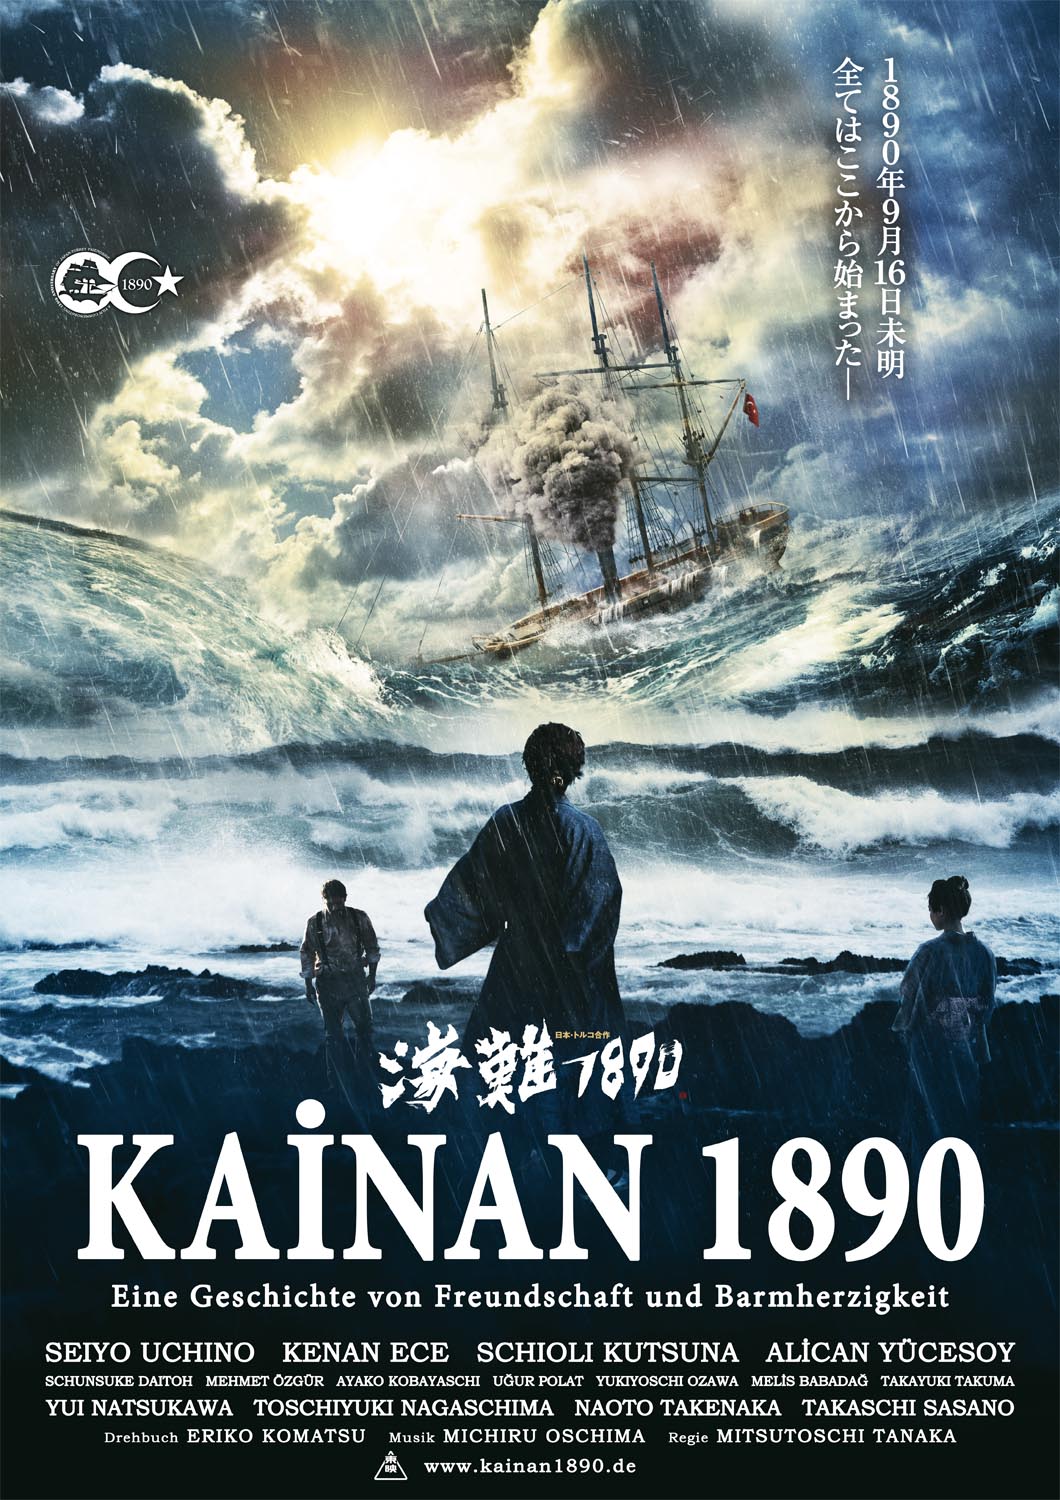 Kainan 1890 movie poster